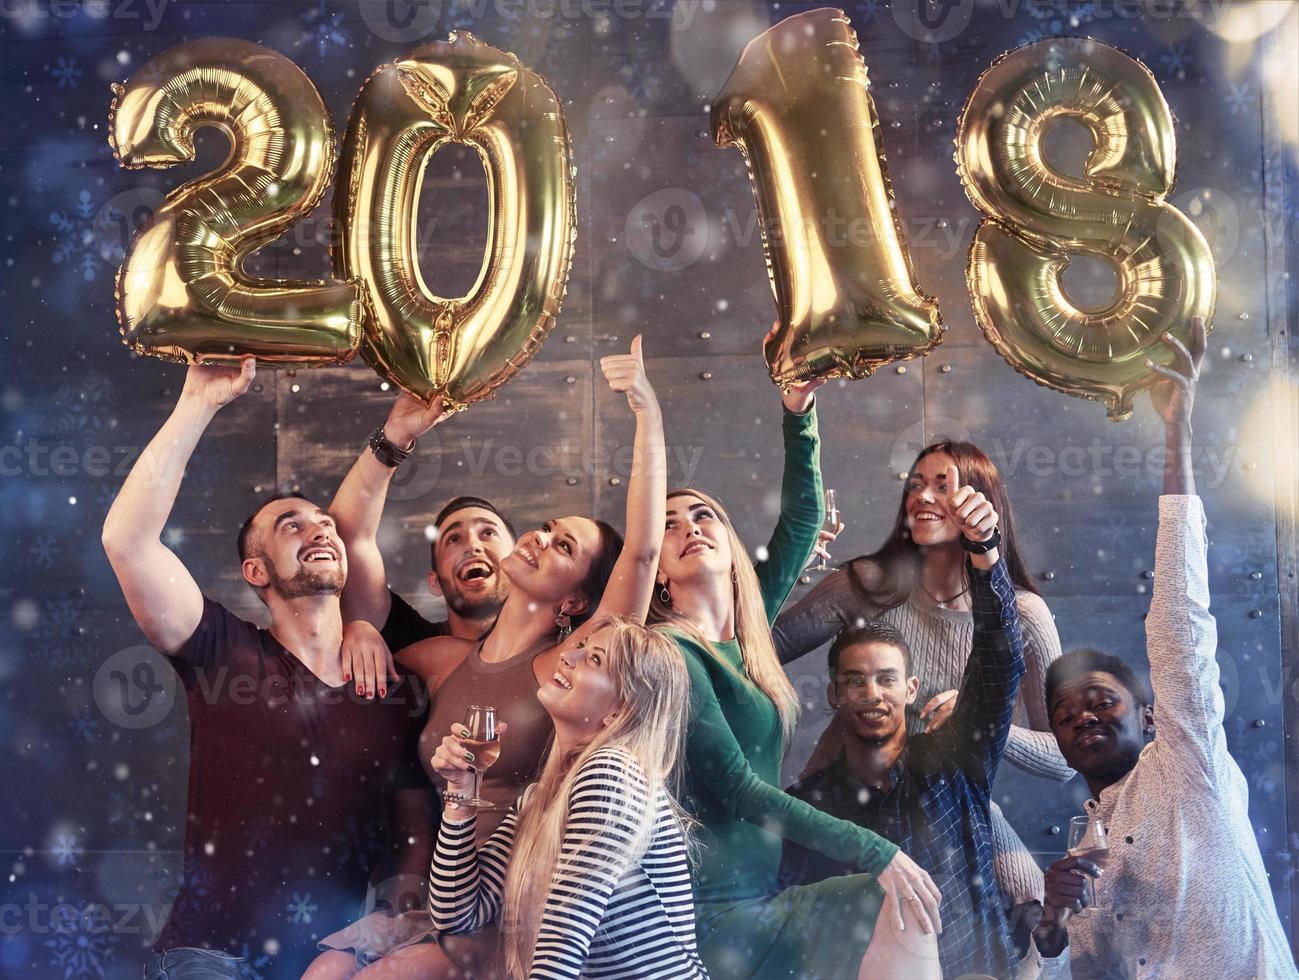 een groep vrolijke jonge mensen houdt nummers vast die de komst van een nieuw 2018-jaar aangeven. het feest staat in het teken van de viering van het nieuwe jaar. concepten over jeugd saamhorigheid levensstijl foto